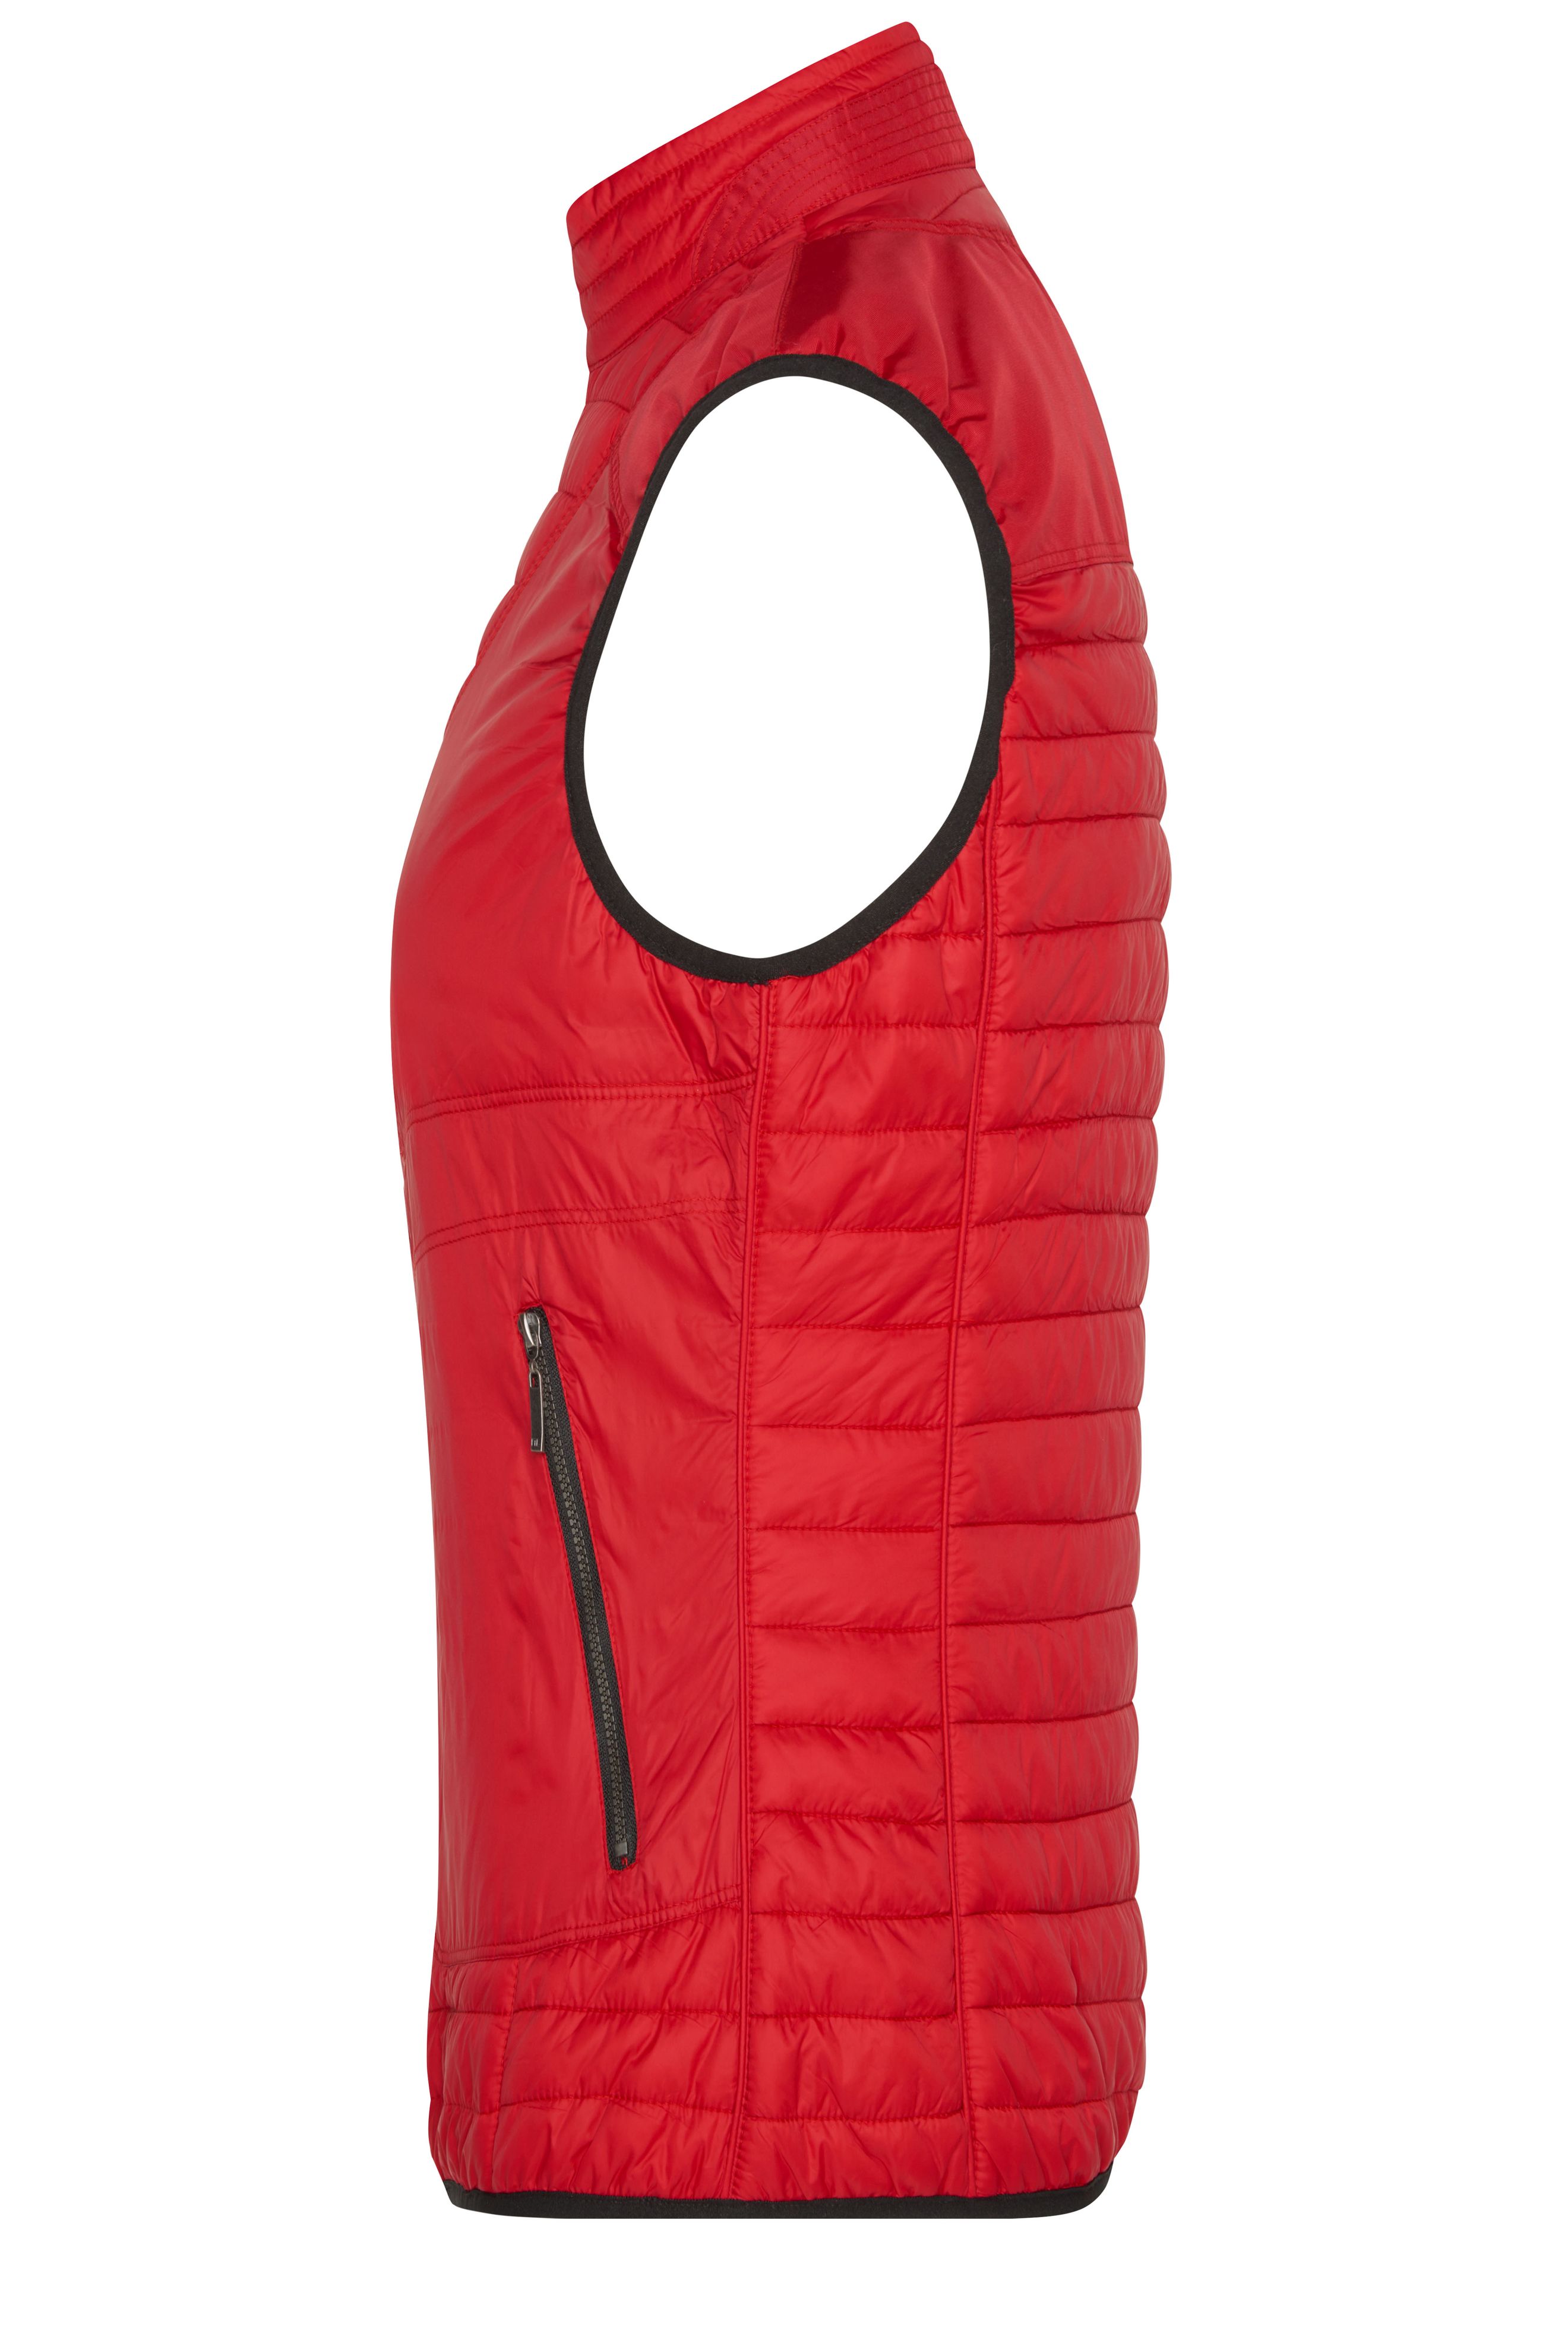 Ladies' Lightweight Vest JN1109 Wattierte Weste mit DuPont™ Sorona® Wattierung (nachwachsender, pflanzlicher Rohstoff)